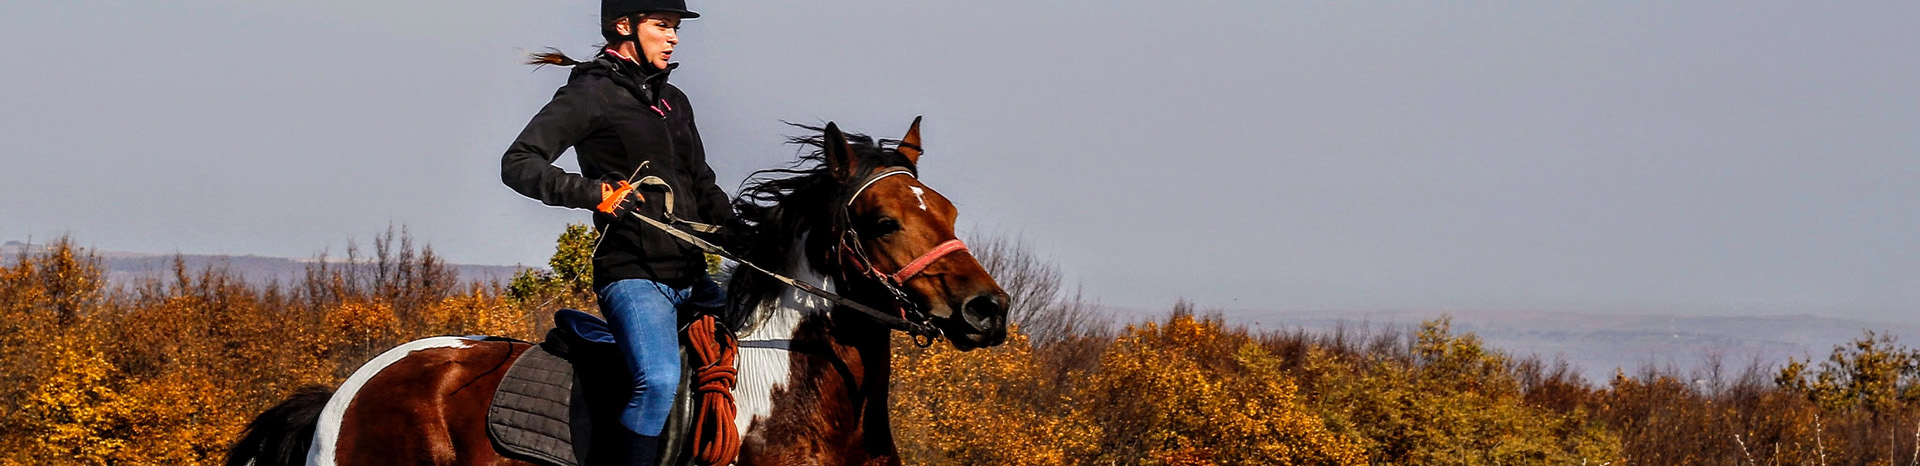 Letselschadezaak gevallen van paard | LetselPro